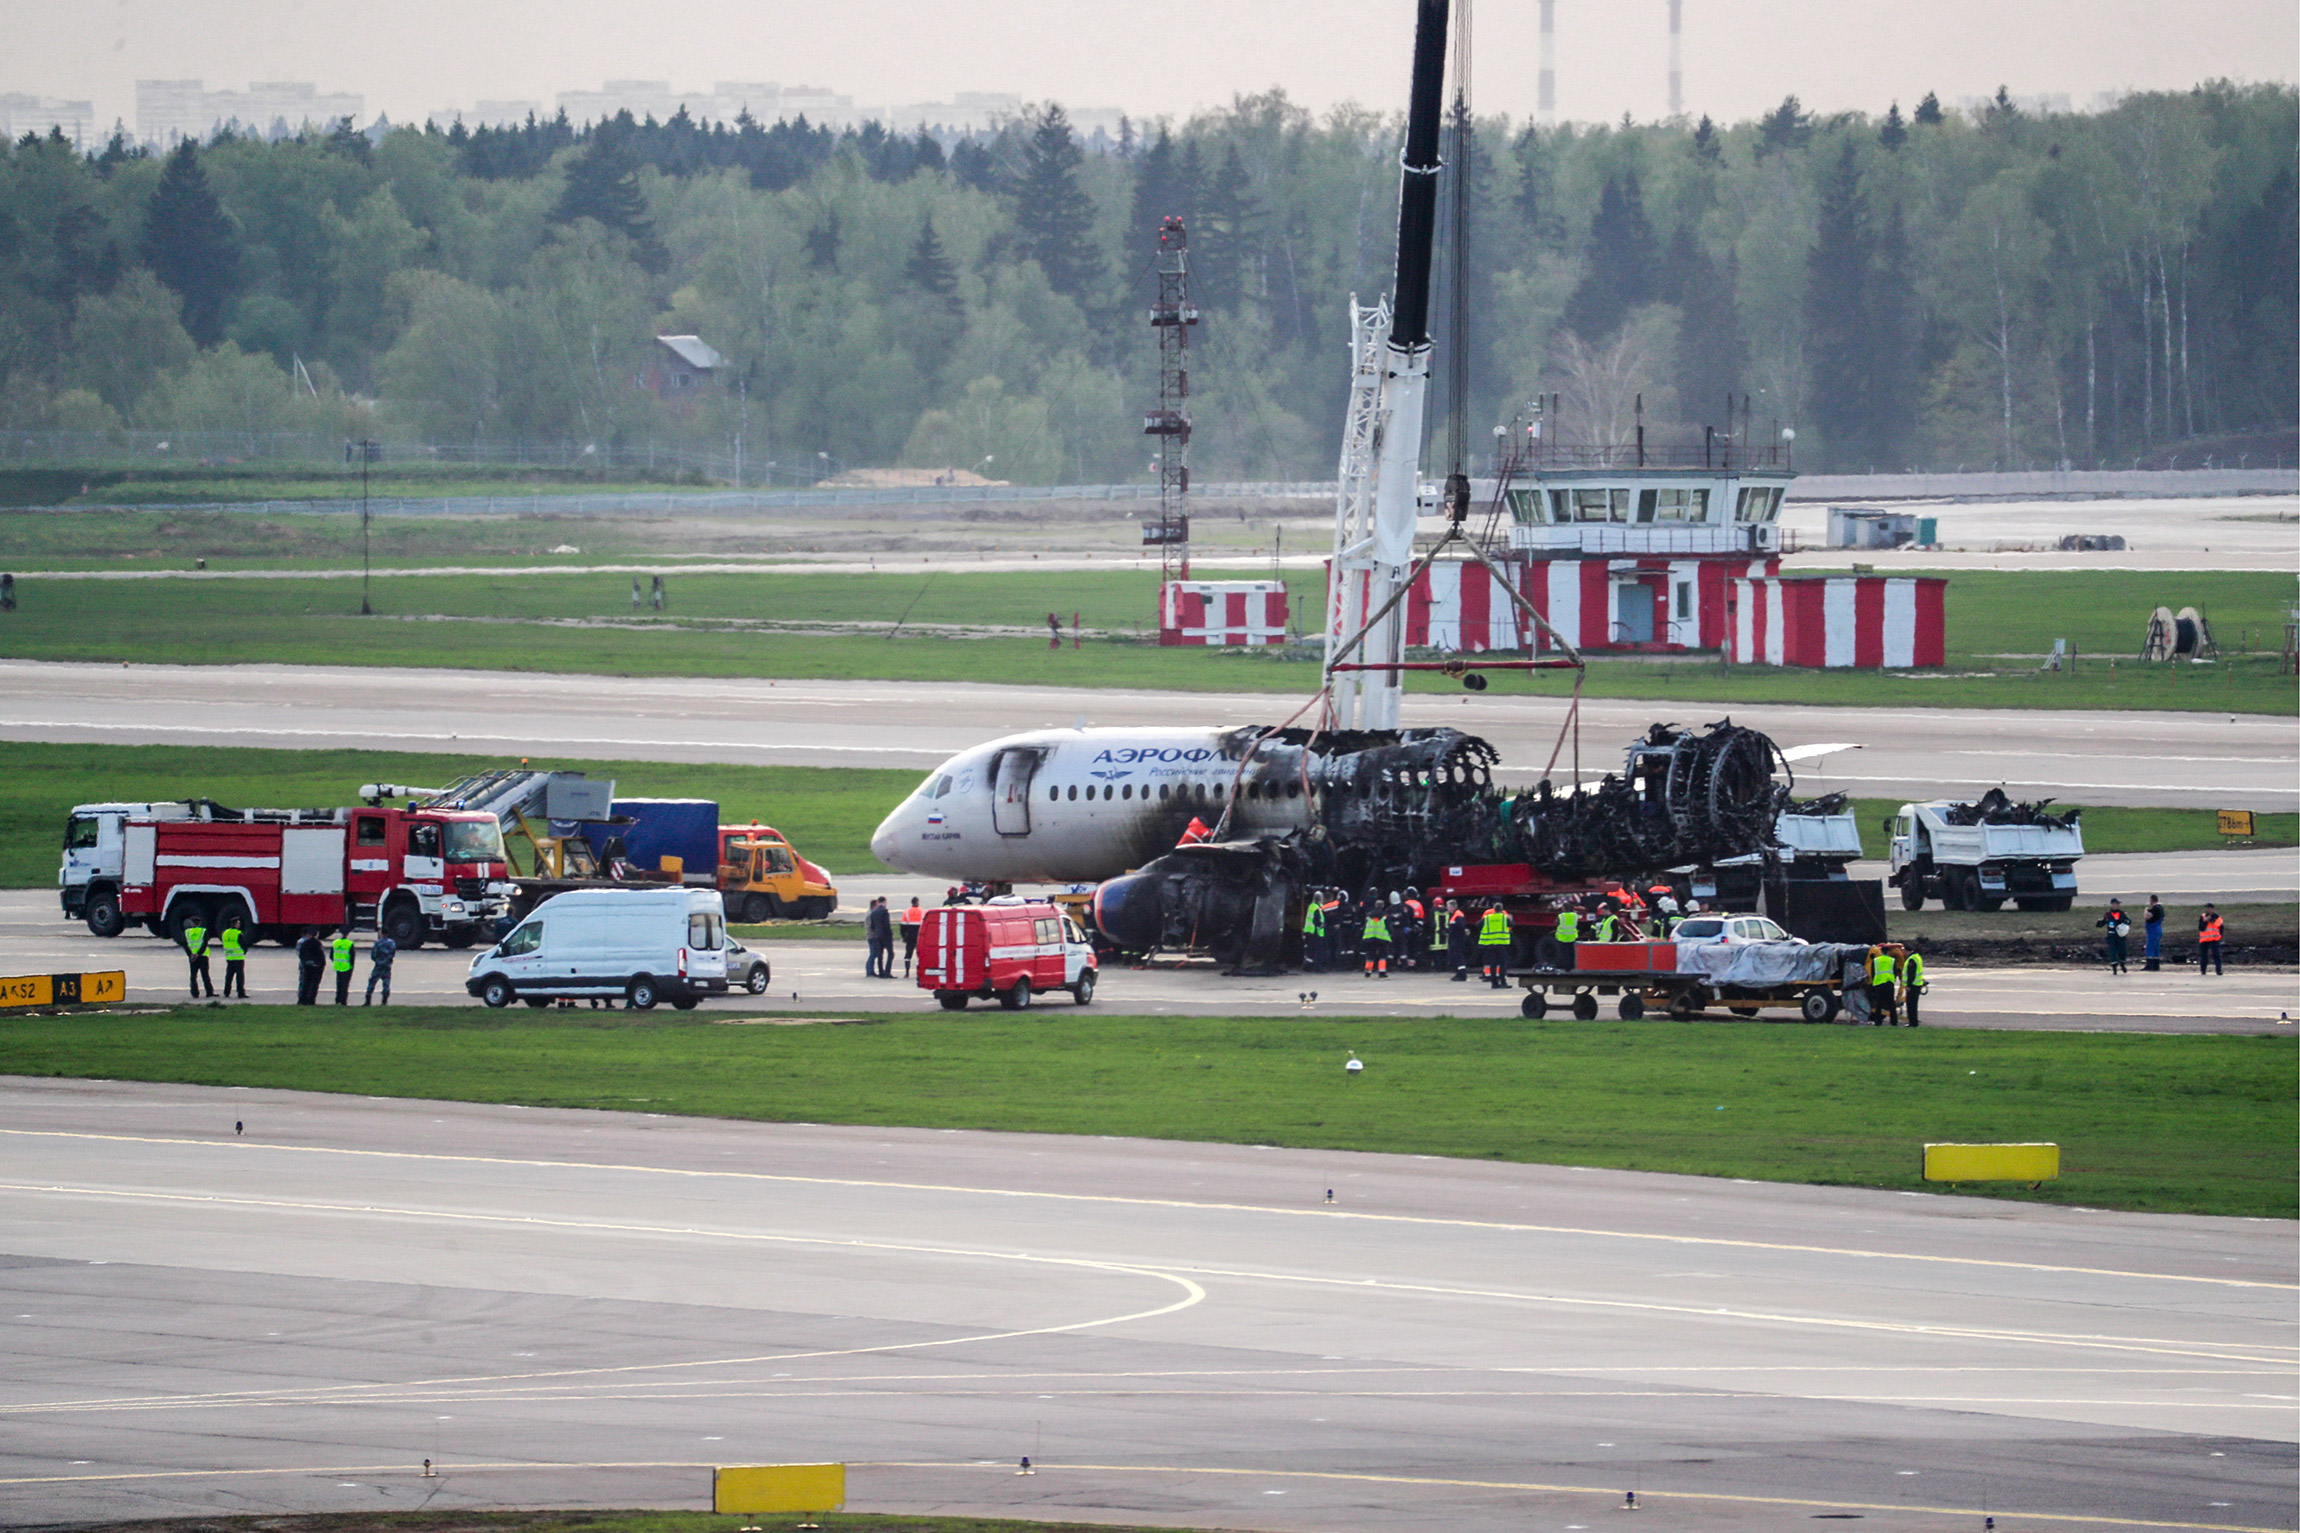 5 мая пассажирский самолет Superjet 100-95 вылетел из Шереметьево, выполняя совместный рейс компаний &laquo;Аэрофлот&raquo; и KLM до Мурманска. Спустя несколько минут после взлета экипаж&nbsp;запросил аварийную посадку из-за технических неполадок и начал снижение. Во время посадки машина&nbsp;загорелась. На борту находились 73 пассажира и пять членов экипажа. 41 человек погиб. МАК в отчете показал фотографии следов попавшей в корпус самолета молнии.

В декабре Следственный комитет завершил​ расследование катастрофы и признал виновным пилота&nbsp;Дениса Евдокимова. Он не признает вину и находится под подпиской о невыезде

Как проходил полет SSJ100 перед аварией. Реконструкция РБК по данным МАКа
&nbsp;
